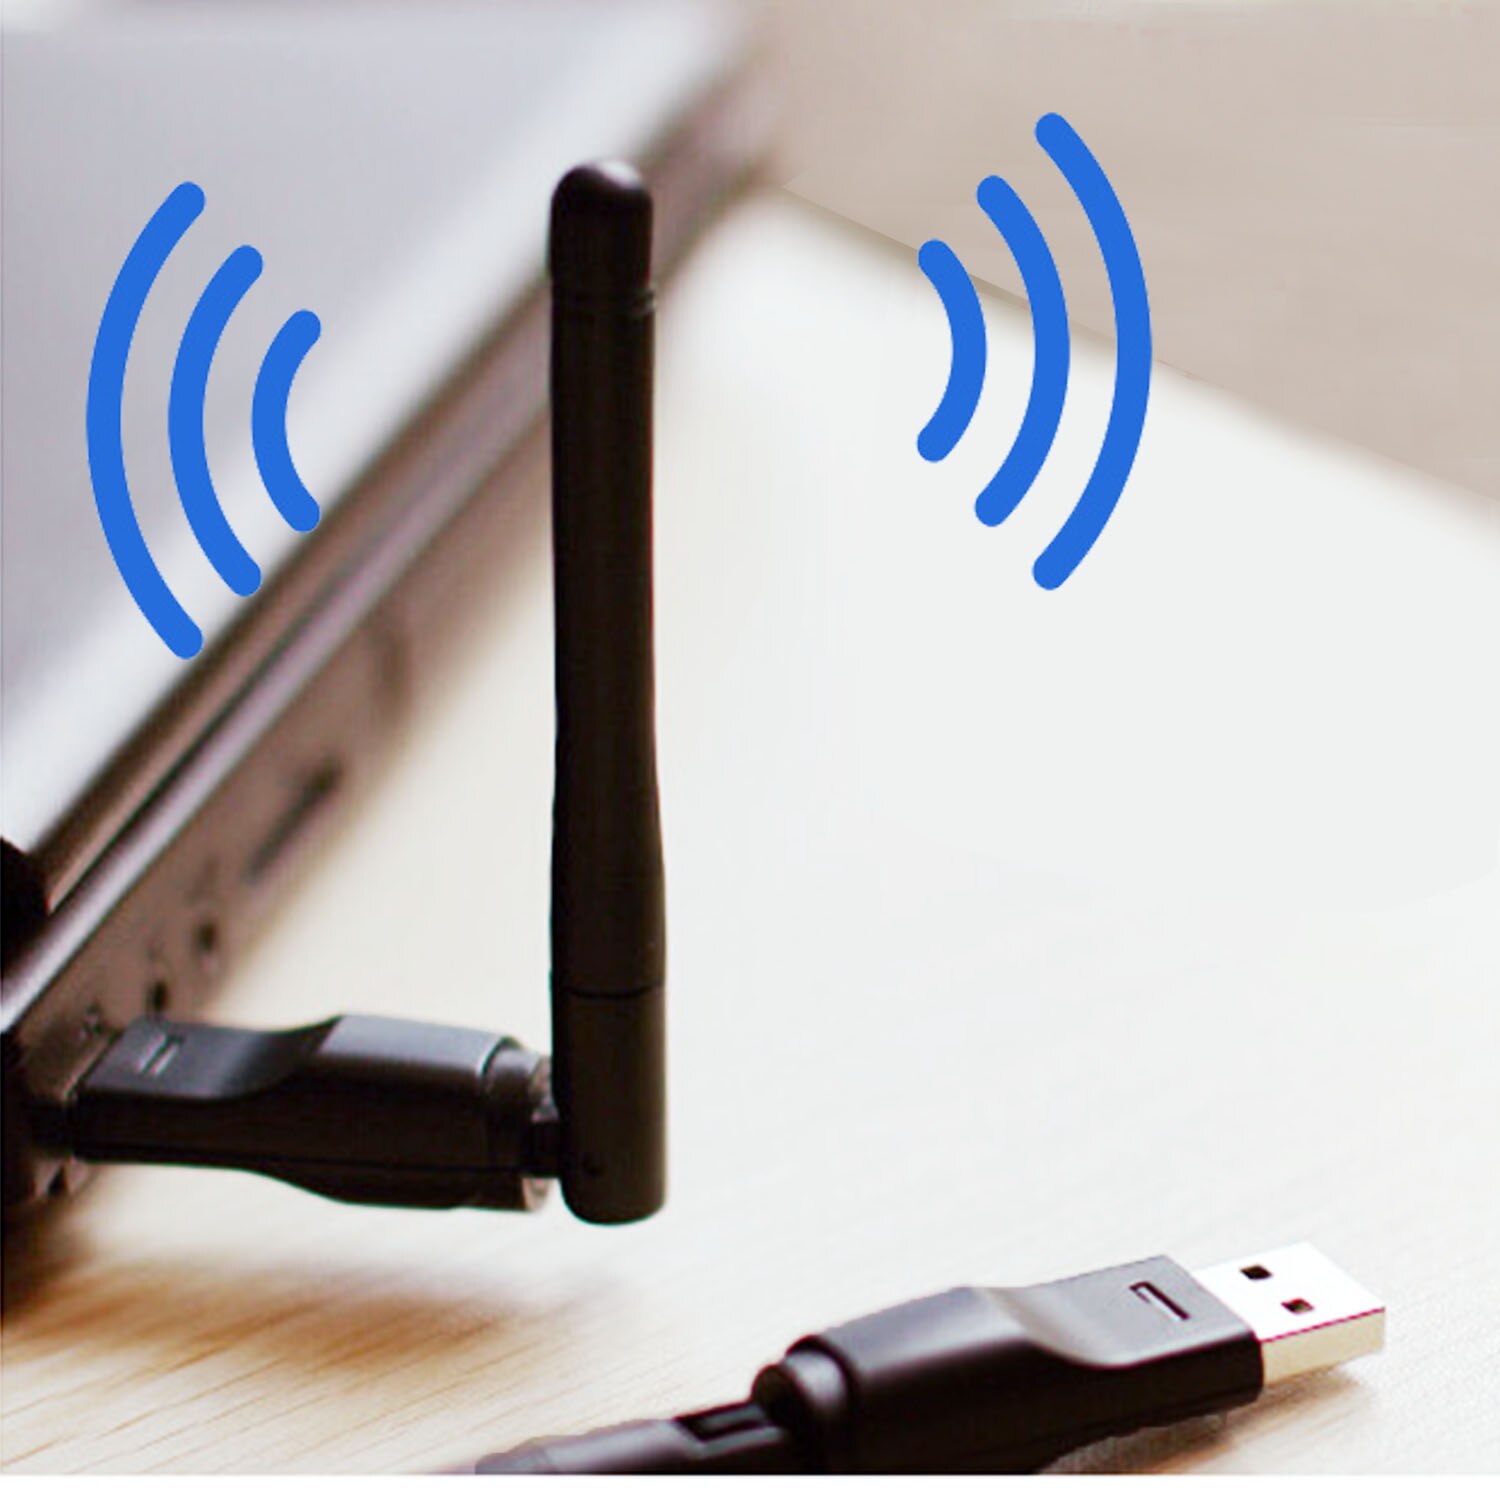 Vmade usb wifi 8188 trådløs adapter netværkskort 600 mbps 5 ghz til  t2 tv tuner modtager mini wi-fi dongle ekstern antenne